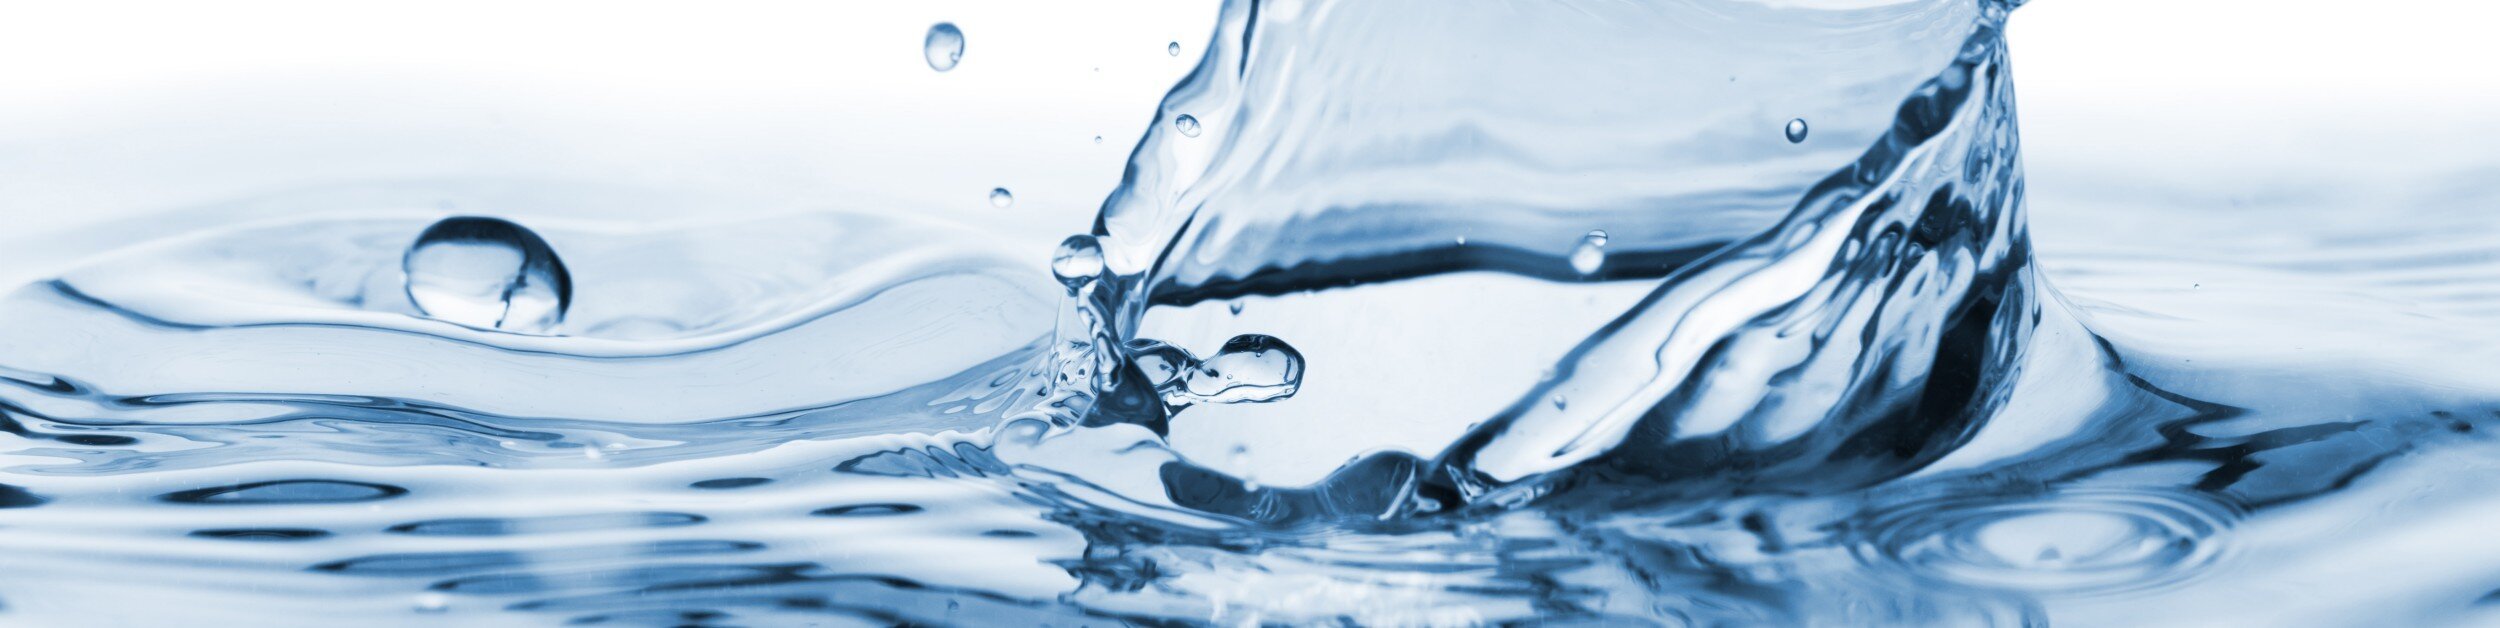 Природная минеральная вода: серьезное испытание для технологий фильтрации